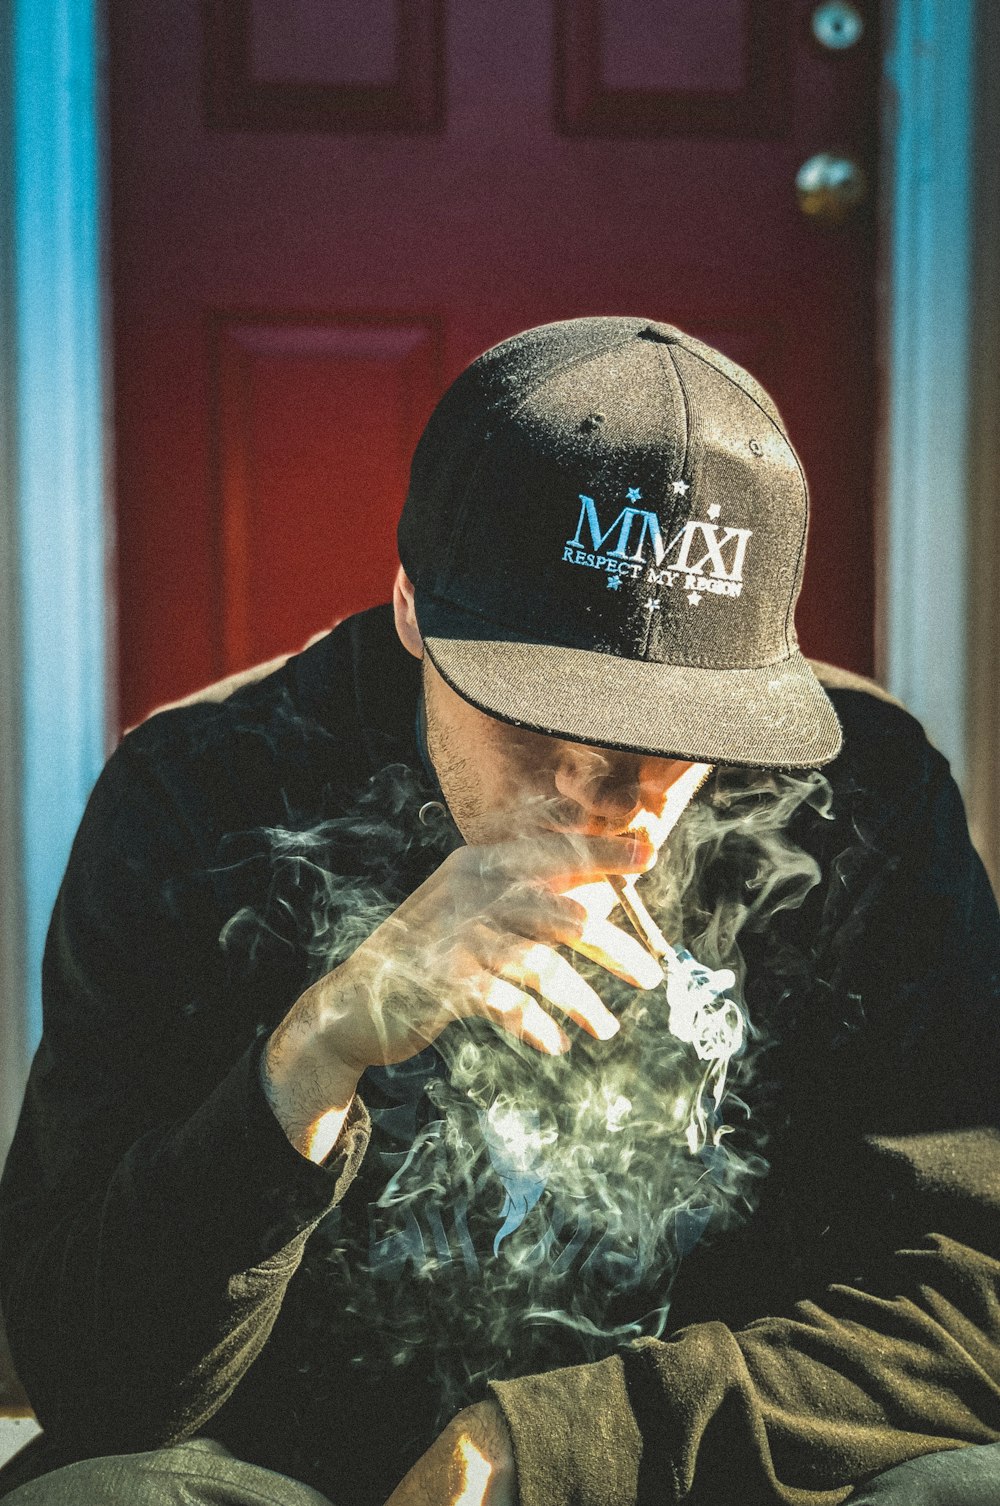 검은 모자와 셔츠를 입은 남자가 담배를 피우며 문 근처에 앉아 있습니다.